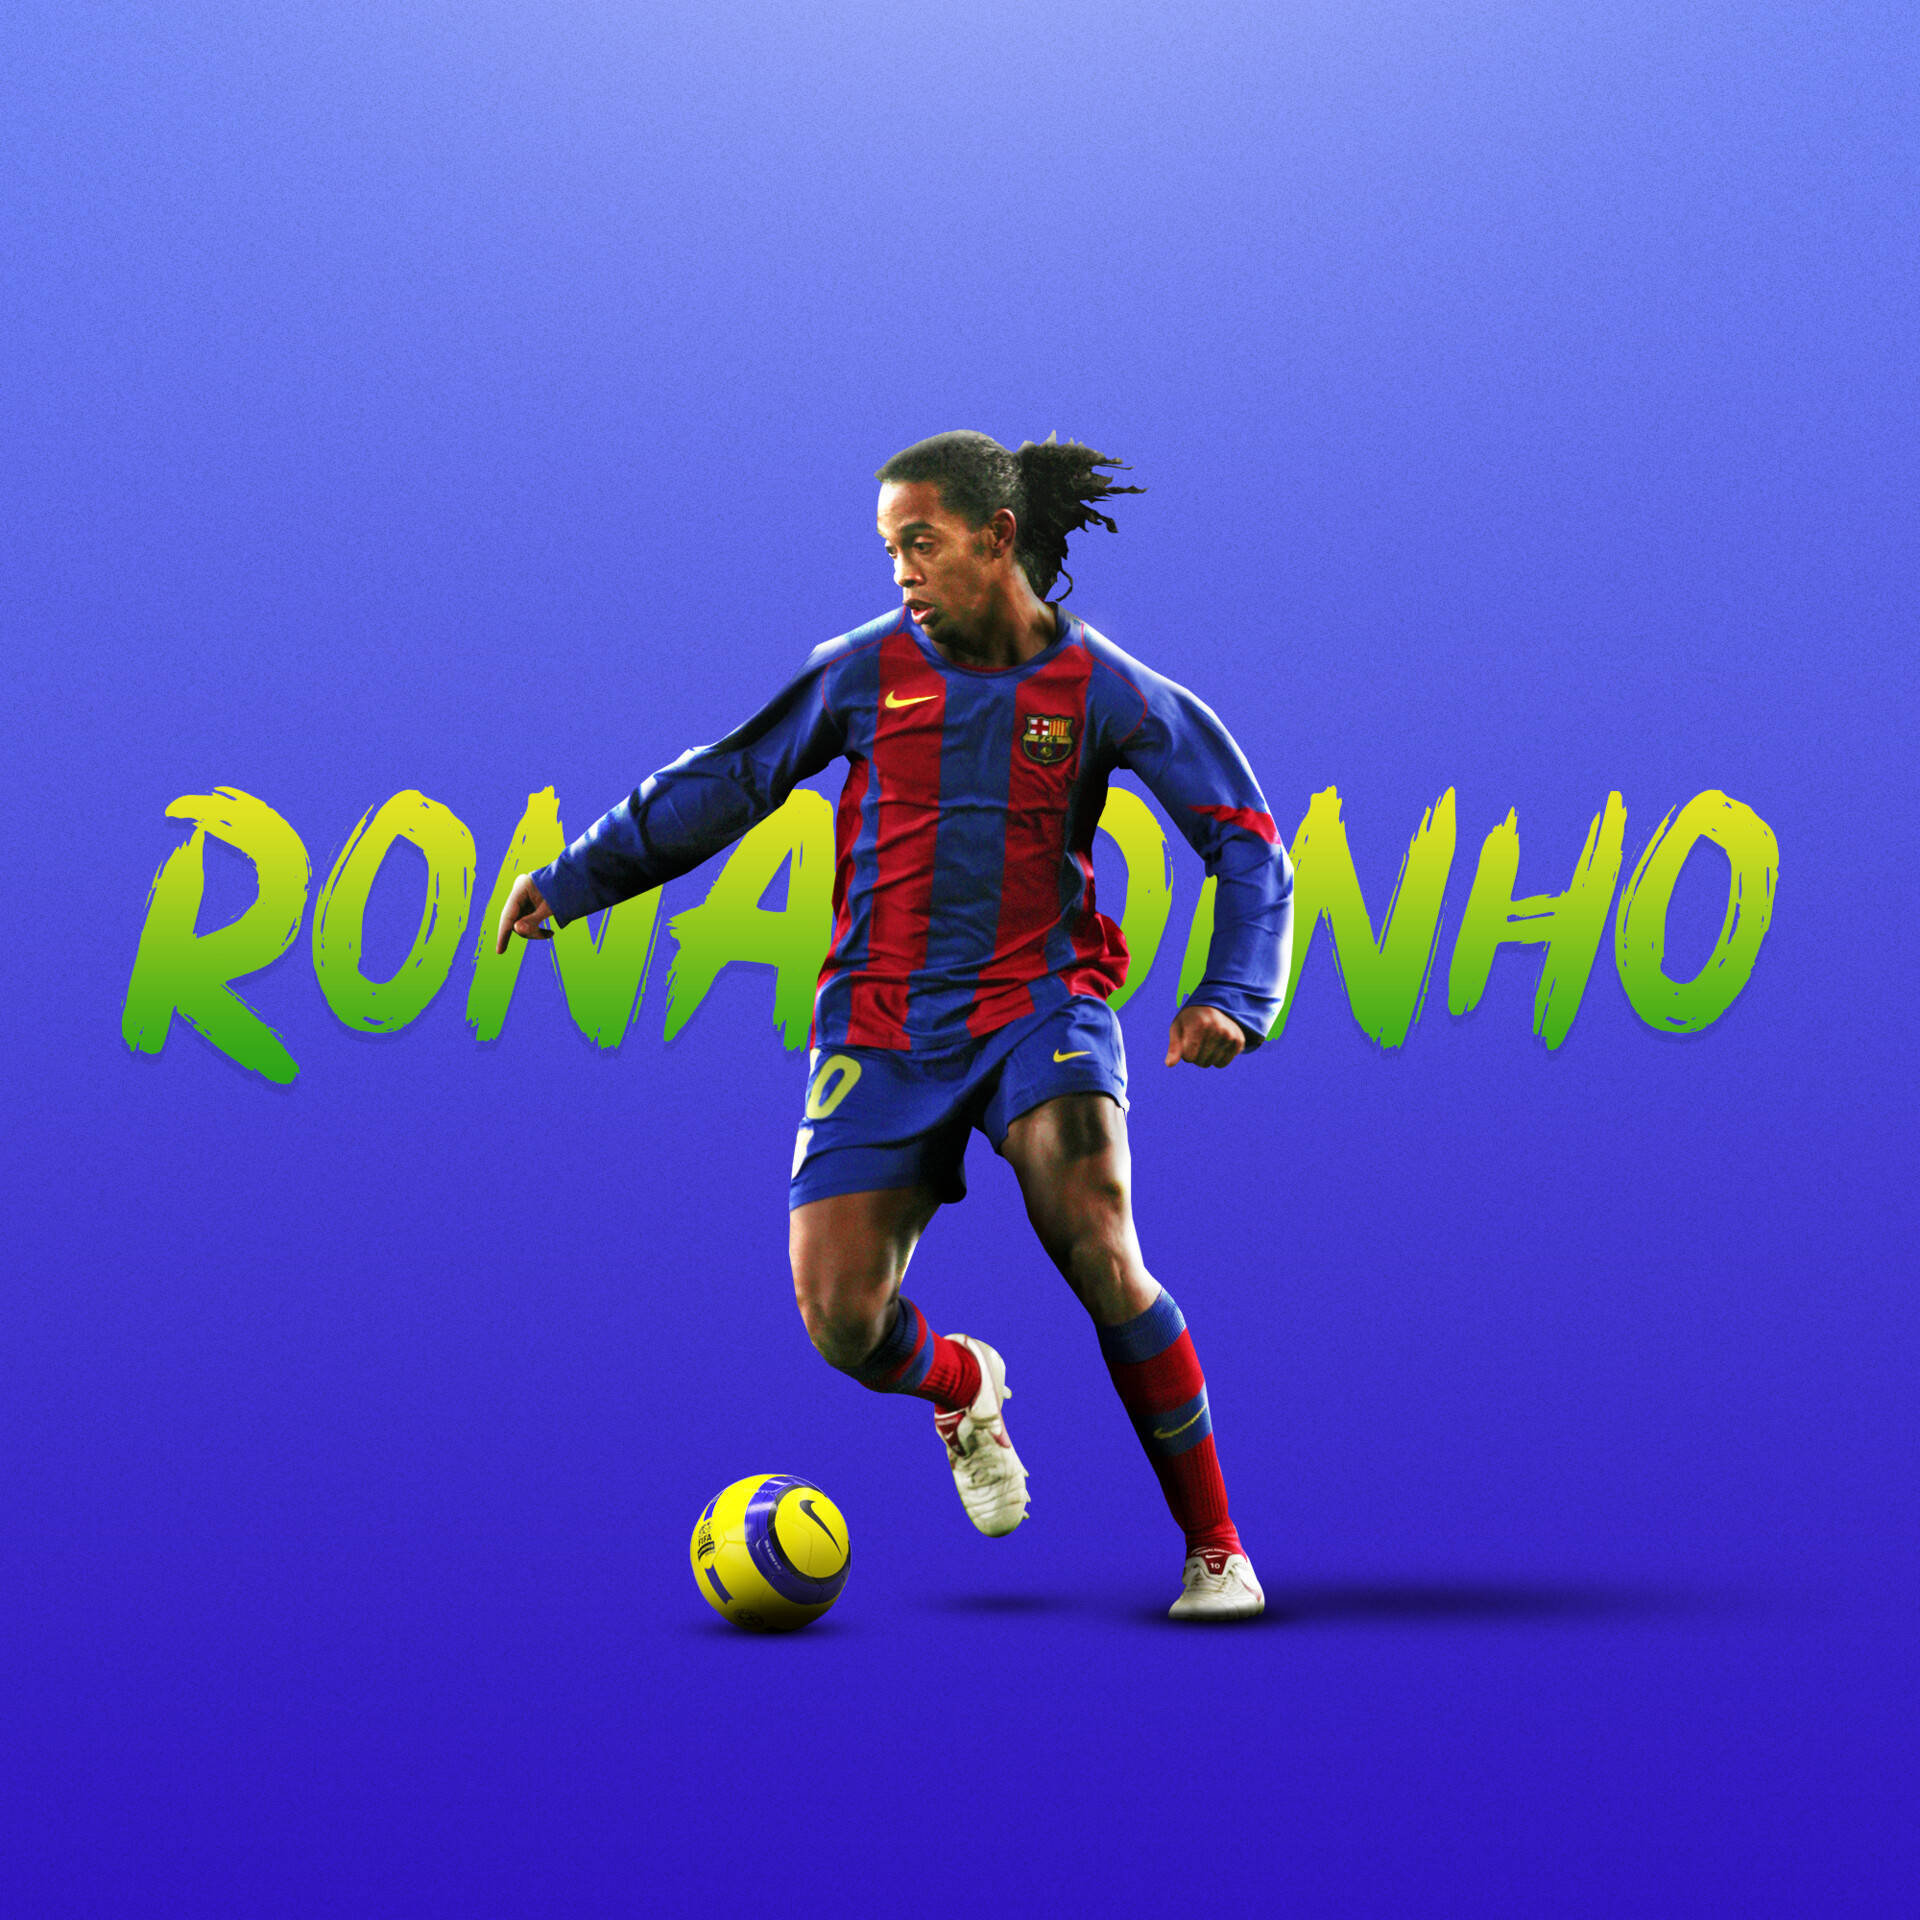 Hình nền Ronaldinho sẽ khiến bạn nhớ đến những khoảnh khắc đỉnh cao của siêu sao này trên sân bóng. Cùng đón nhận không gian làm việc hoặc giải trí đầy đủ năng lượng với hình nền đẹp của Ronaldinho trên máy tính và điện thoại của bạn.